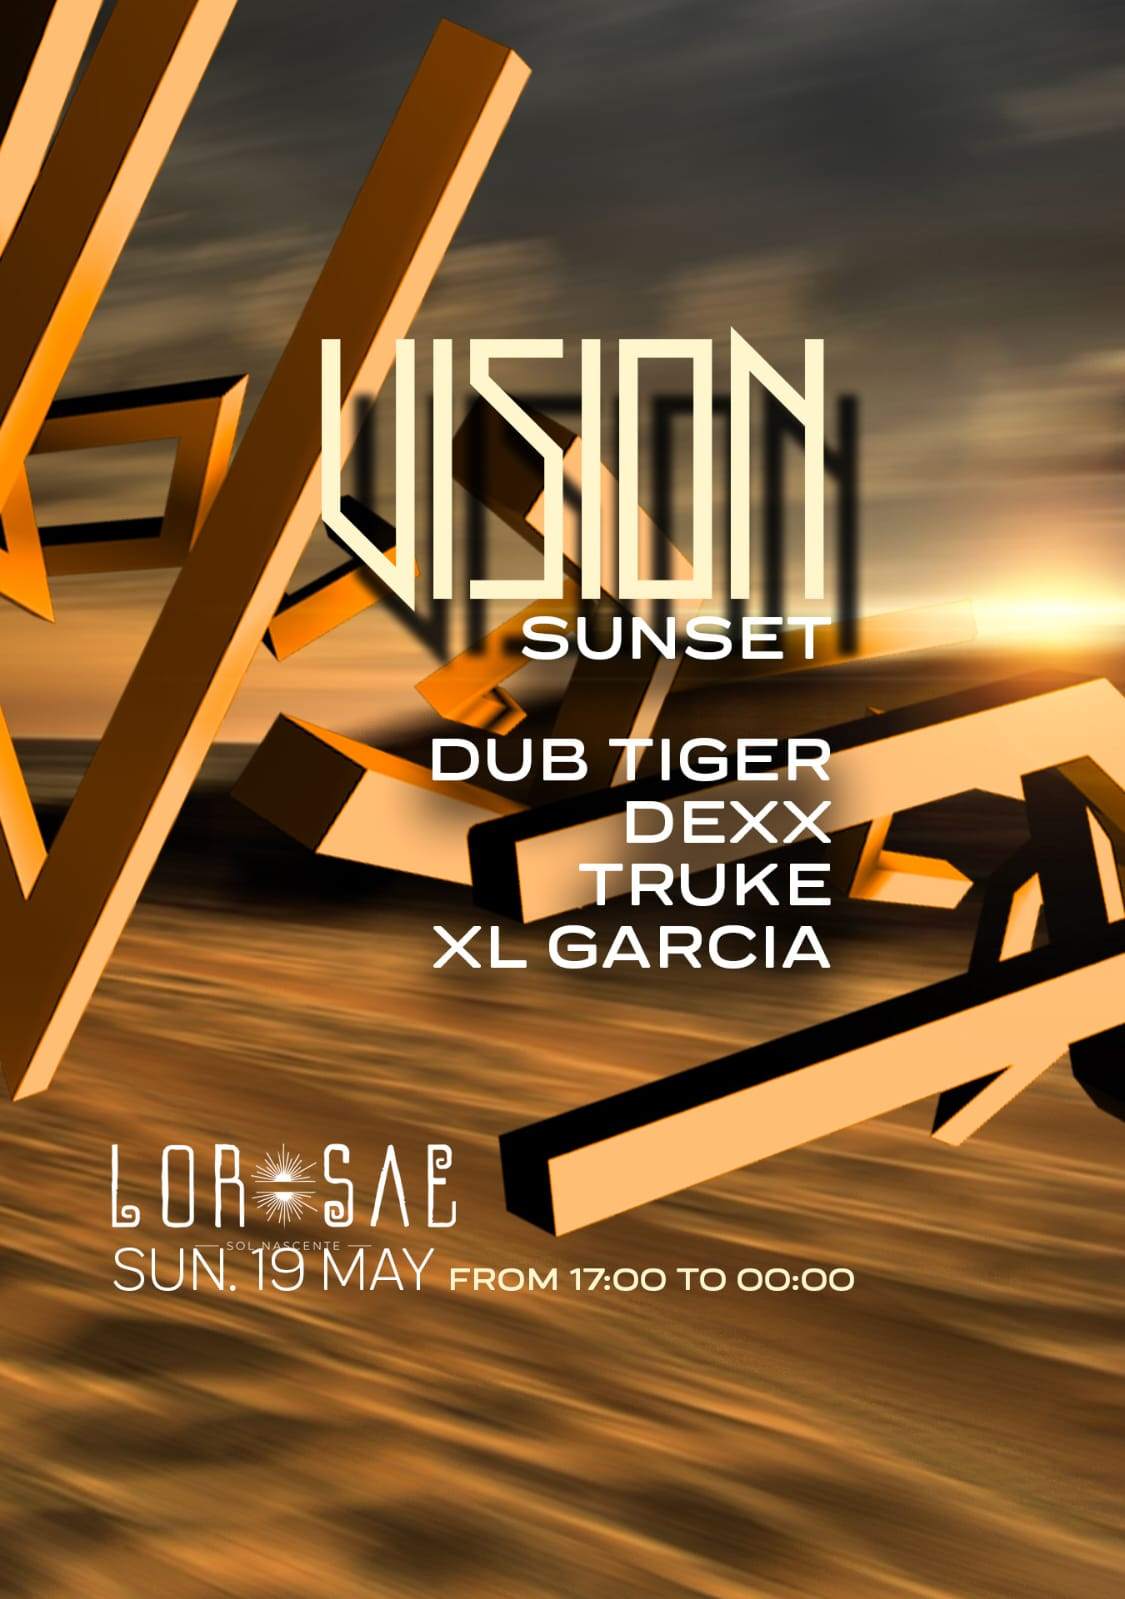 Vision Sunset: Dexx, Dub Tiger, Truke & Xl Garcia - フライヤー表